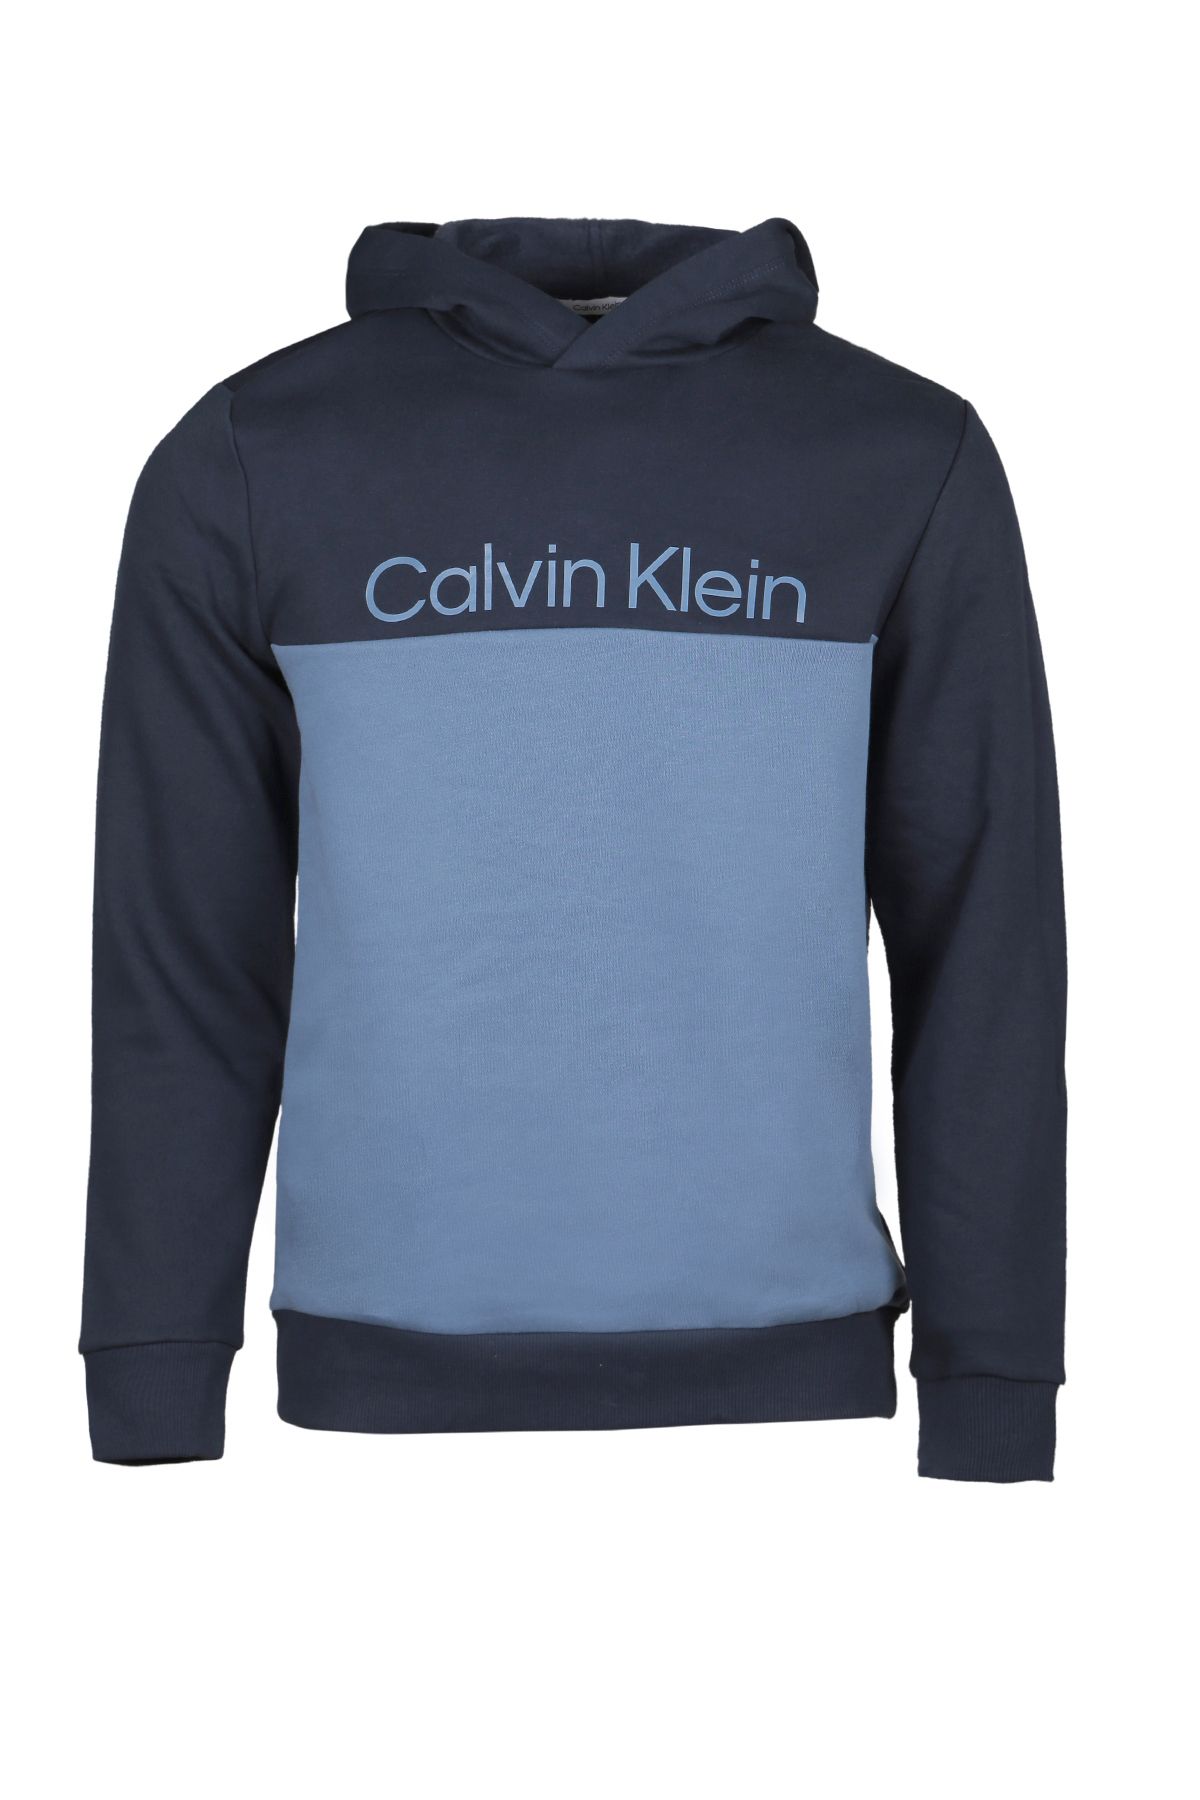 Calvin Klein Erkek Sweatshırt 40ıc402-410